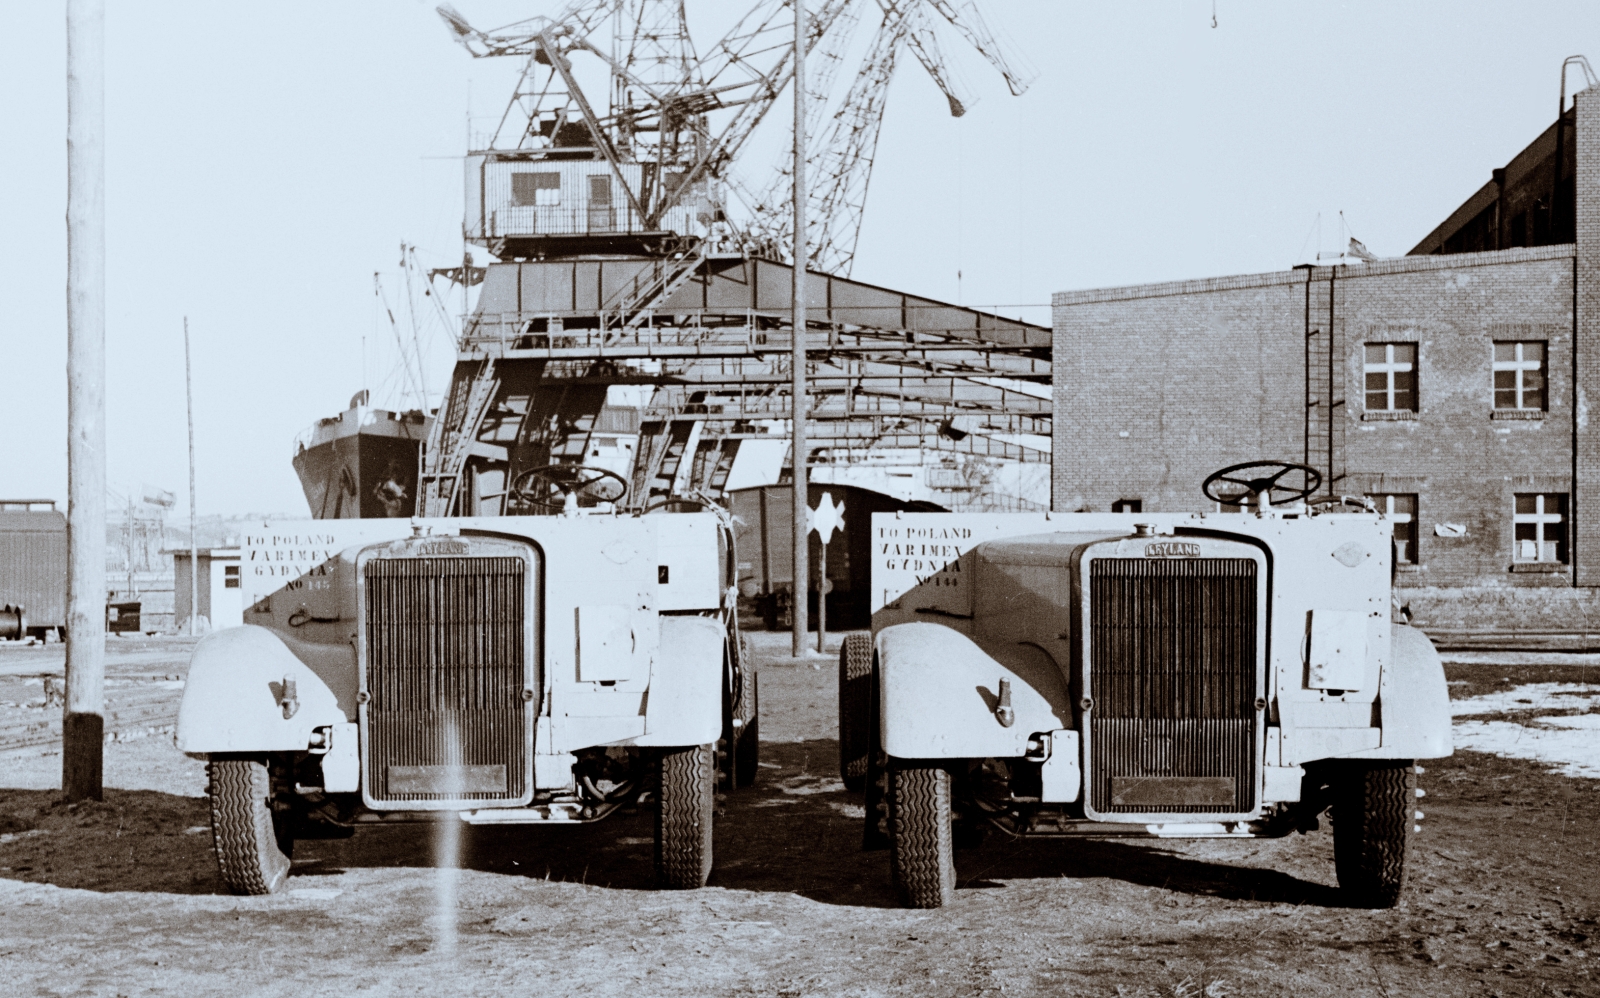 Leyland
Wyładowane ze statku przybyłe morzem z Anglii podwozia Leyland przeznaczone do zabudowy w Polsce. 
Współcześnie spokrewniony format stosuje choćby Volvo i MAN eksportując podobne zestawy do Indii.

Zdjęcie jest własnością NAC.
Wszelkie prawa zastrzeżone.

Słowa kluczowe: Leyland Gdynia 1948